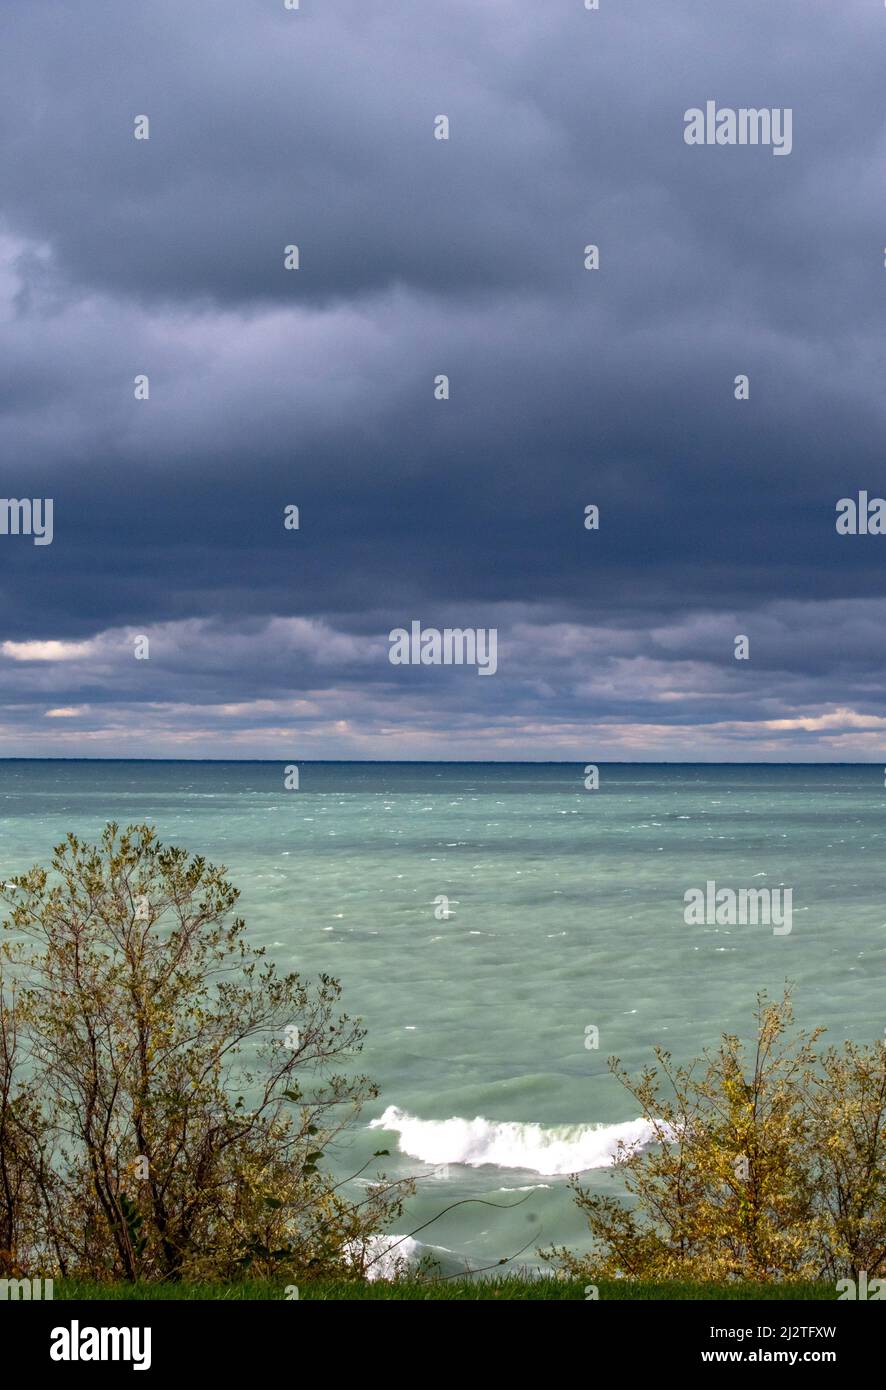 Über dem Lake Michigan in Michigan, USA, beginnt sich ein Sommersturm zu entwickeln Stockfoto